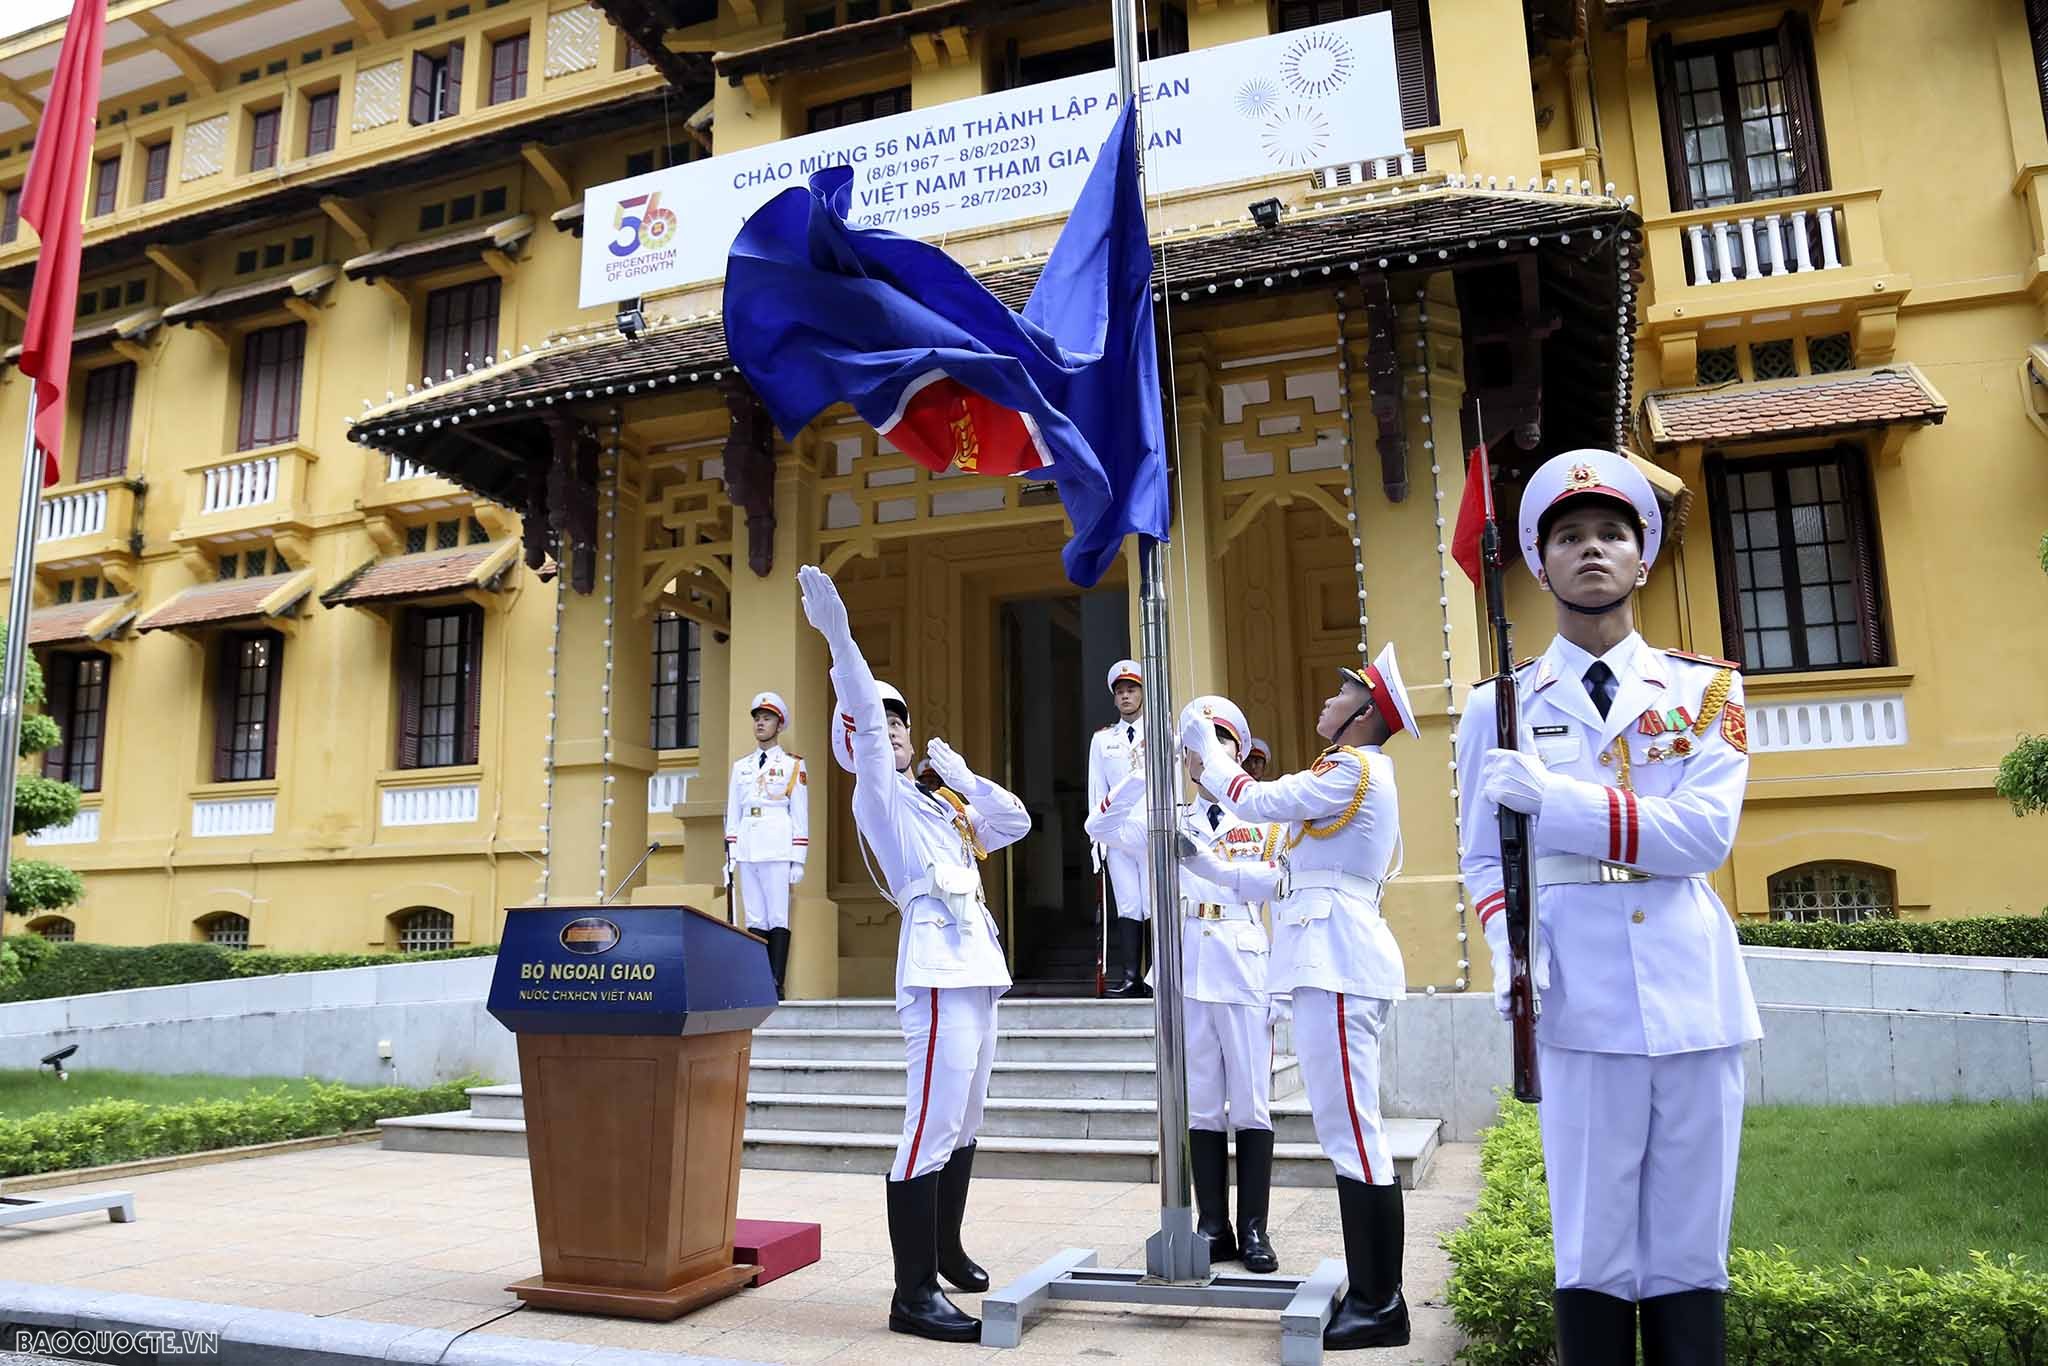 56 năm thành lập ASEAN: Việt Nam tích cực và chủ động đóng góp vào sự lớn mạnh của hiệp hội